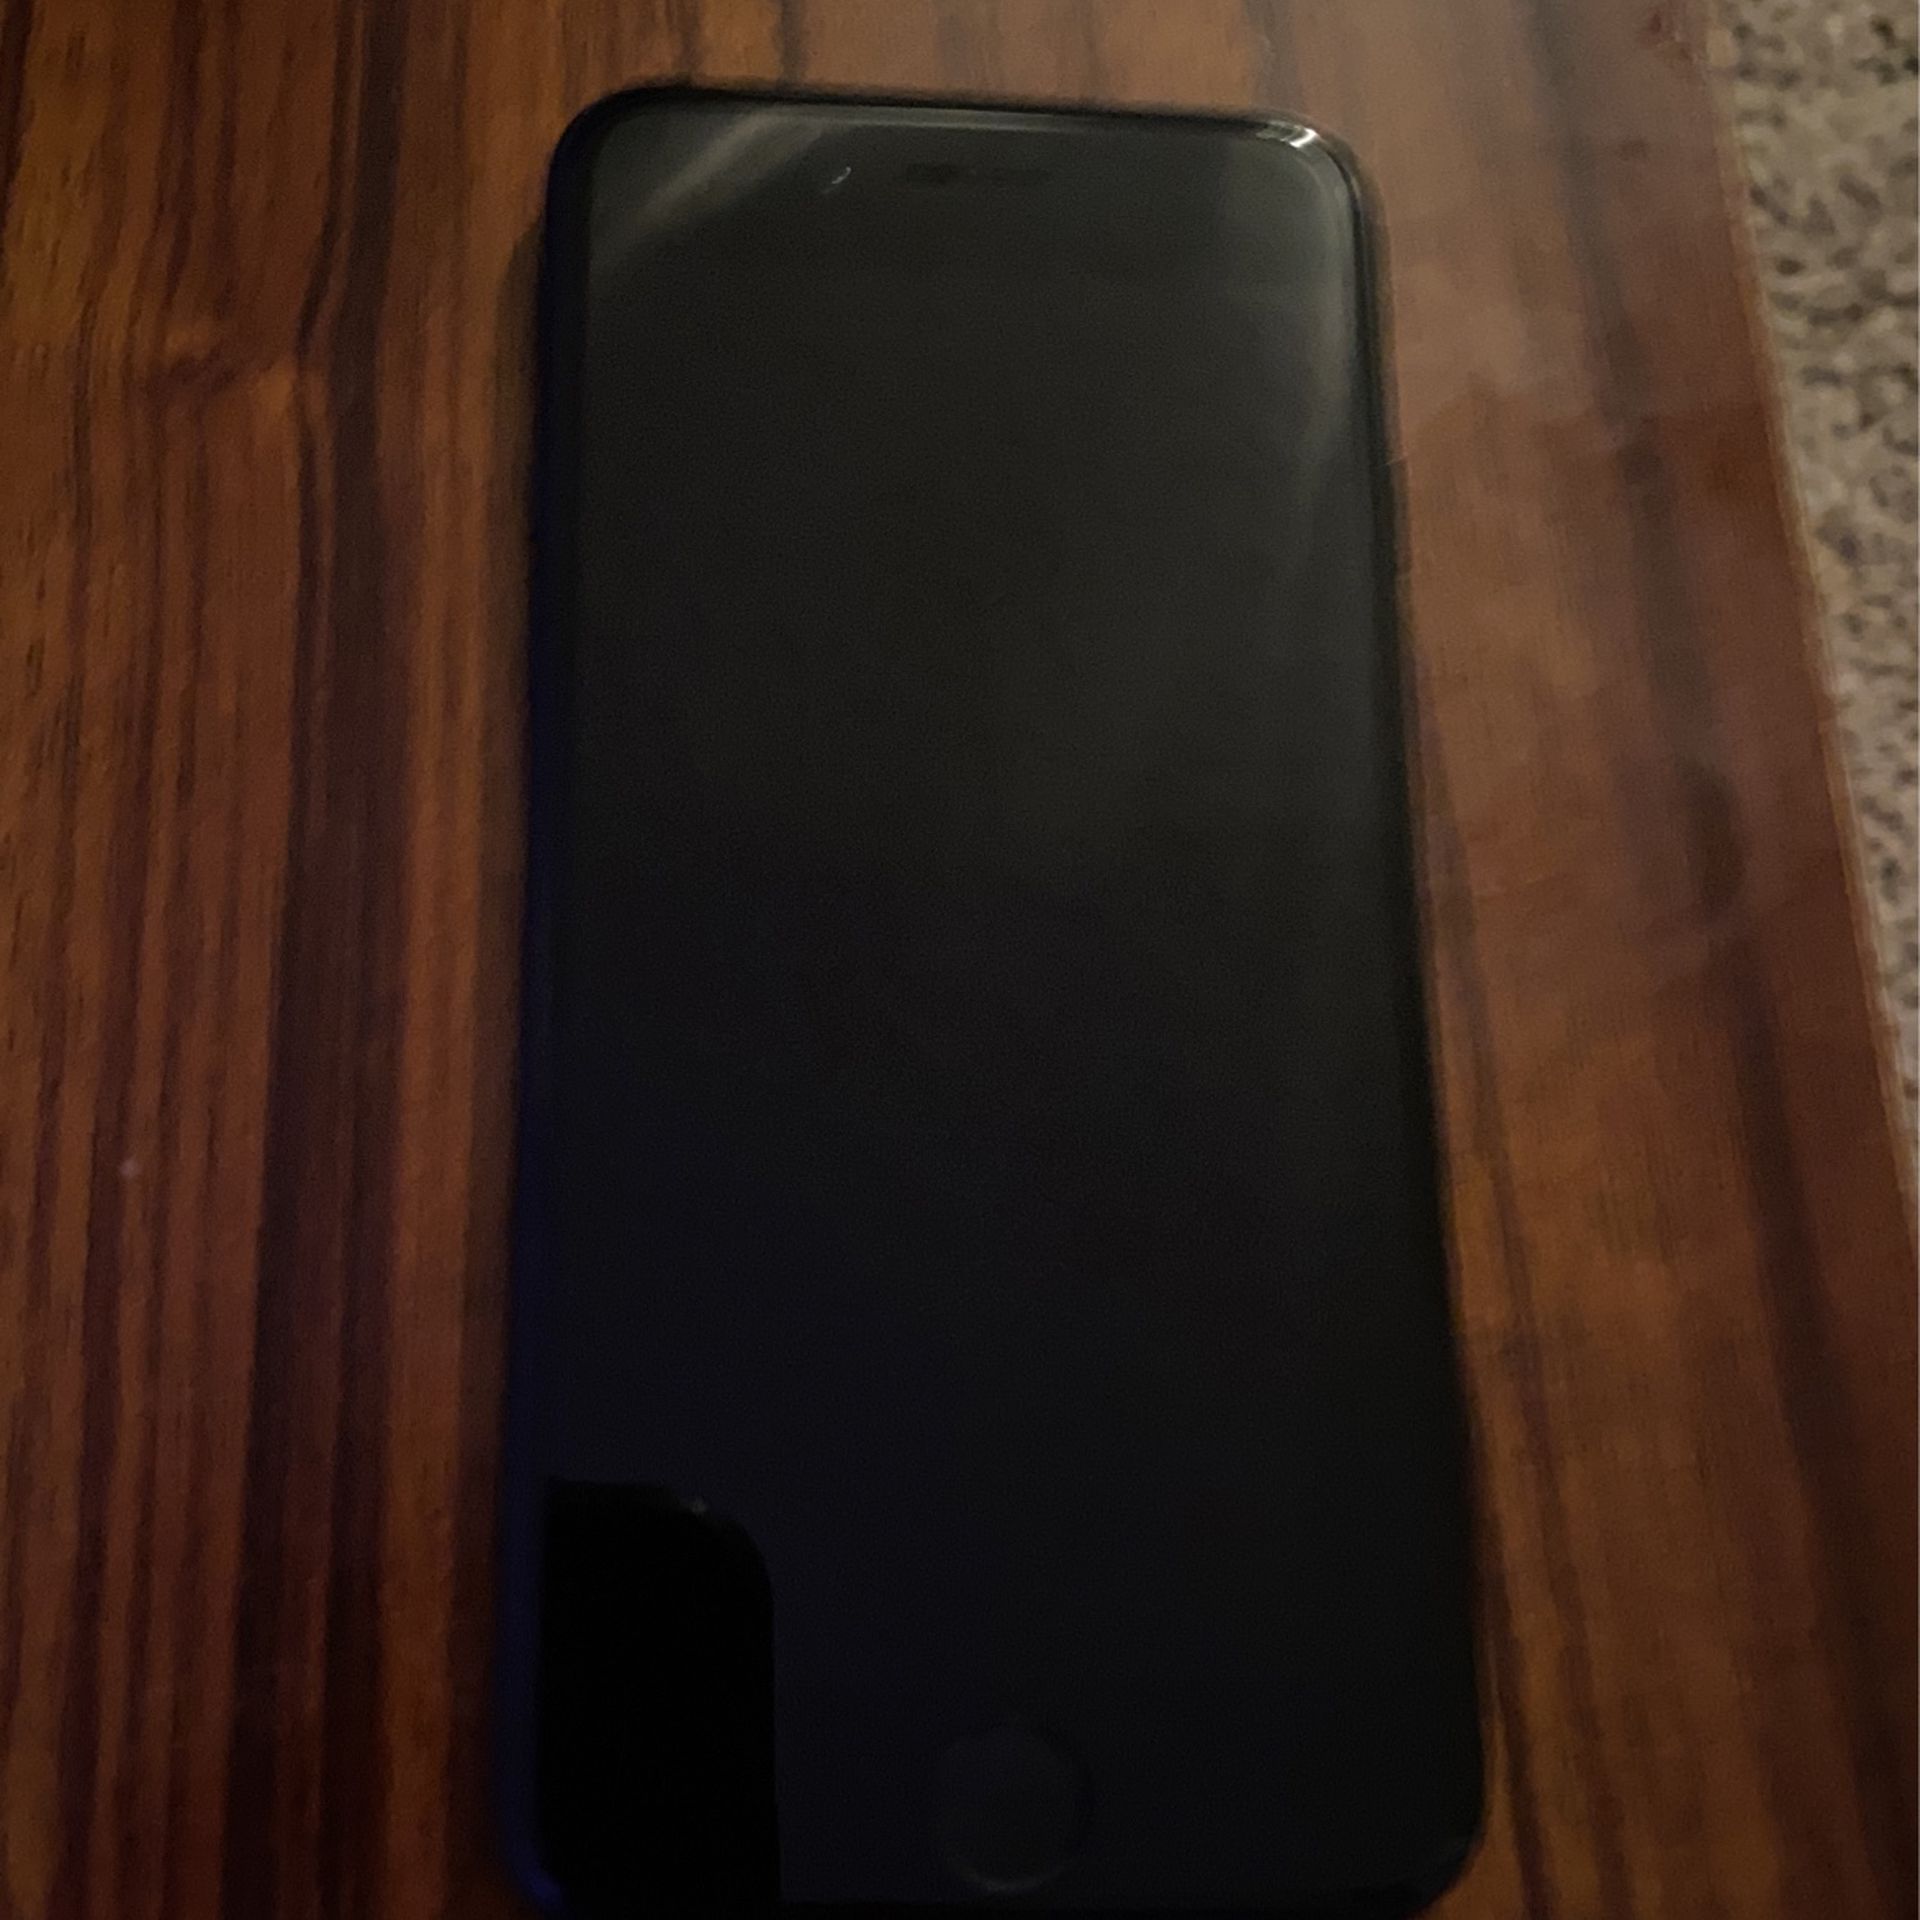 Black Iphone 8 64 GB